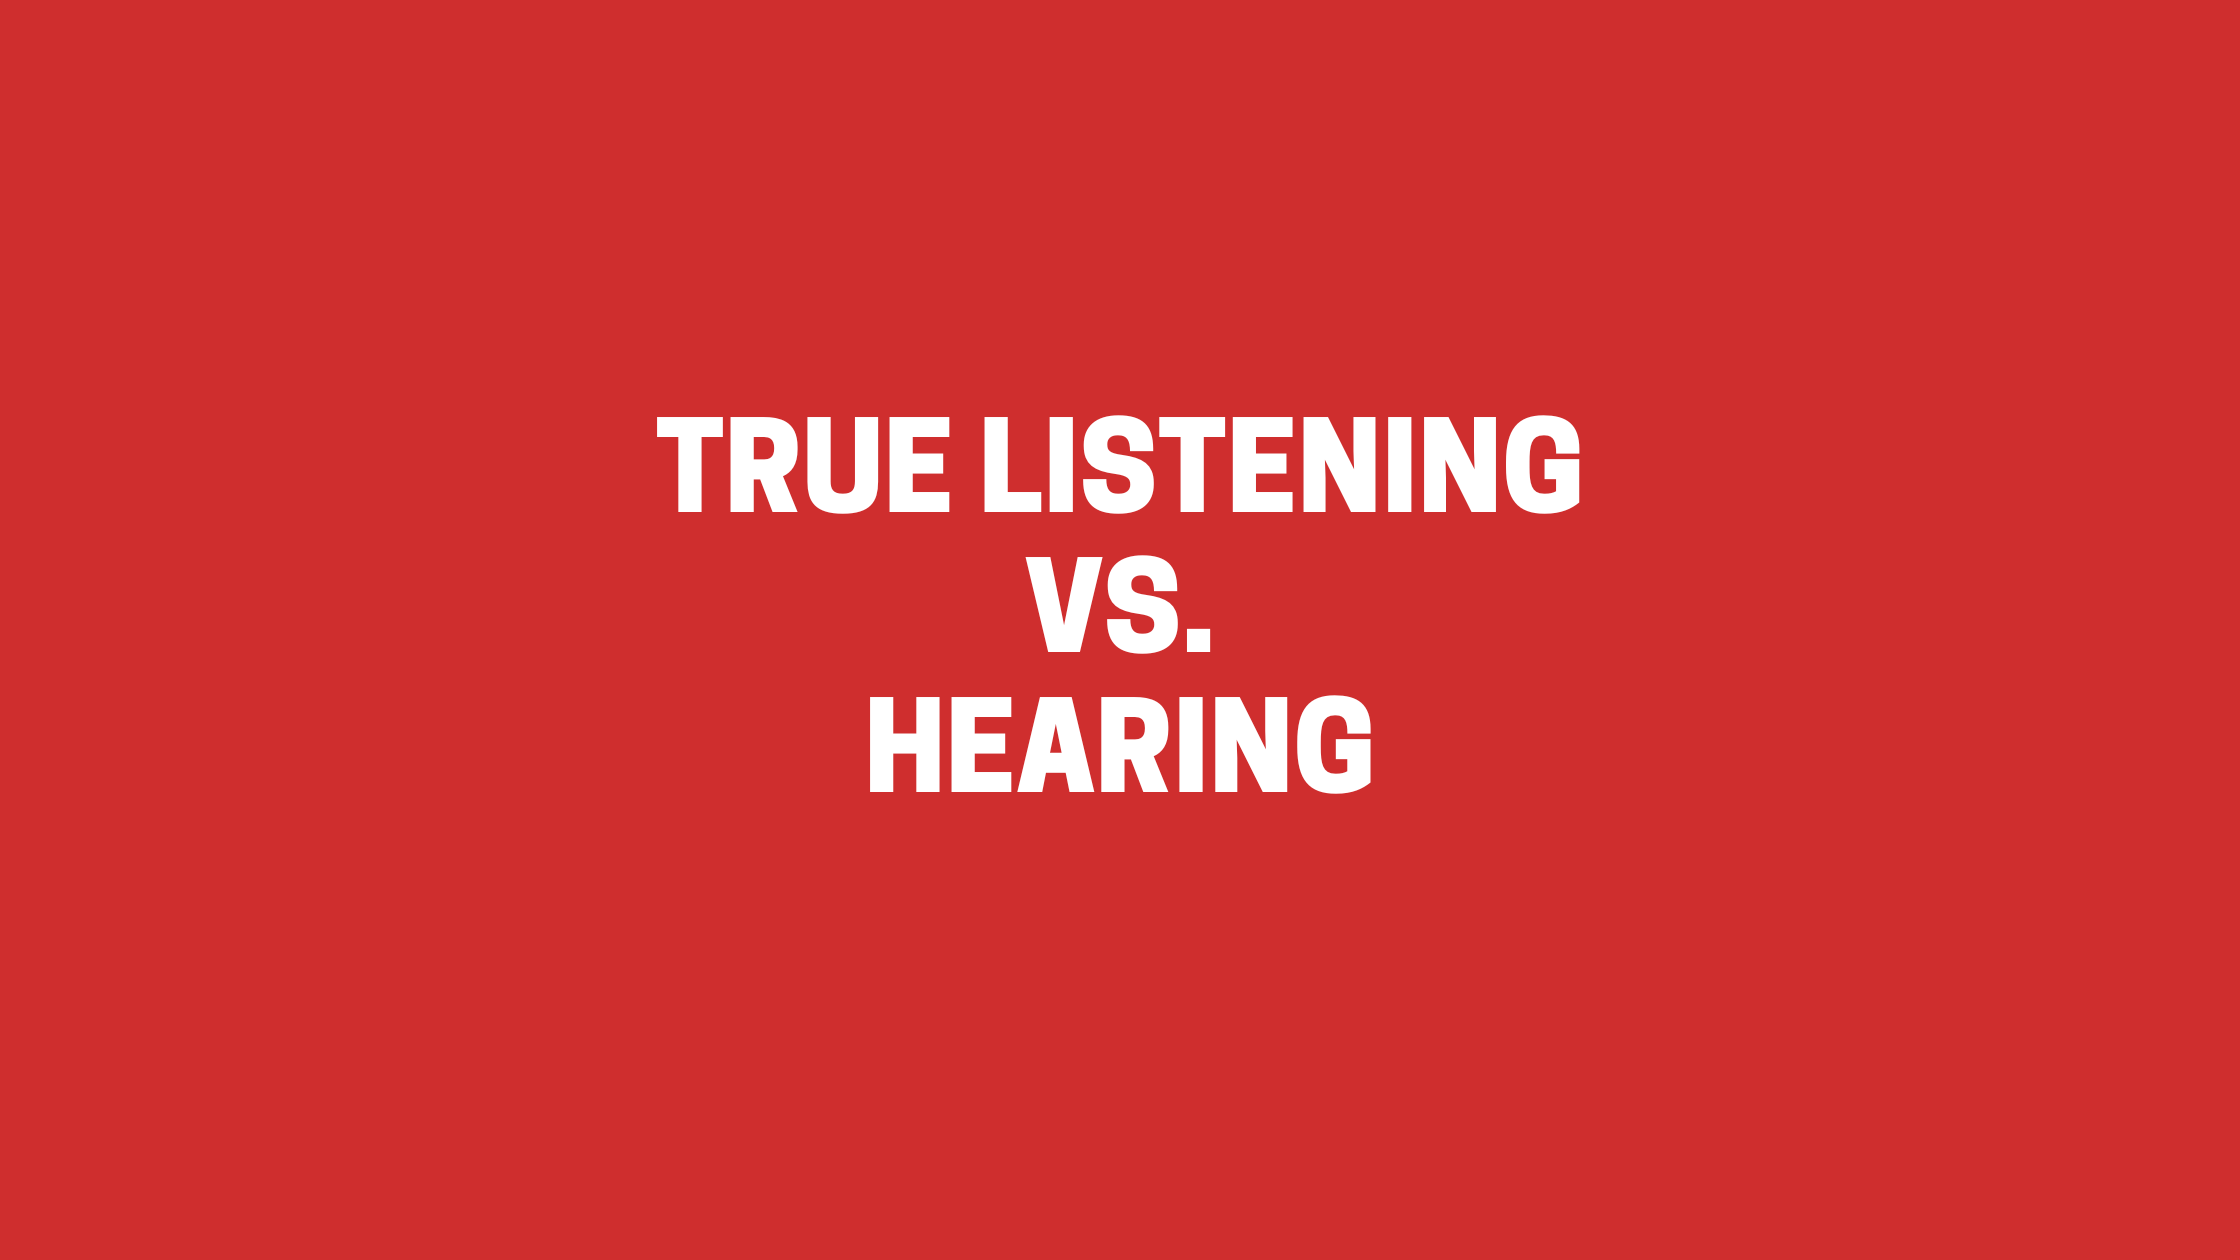 hearing vs listening